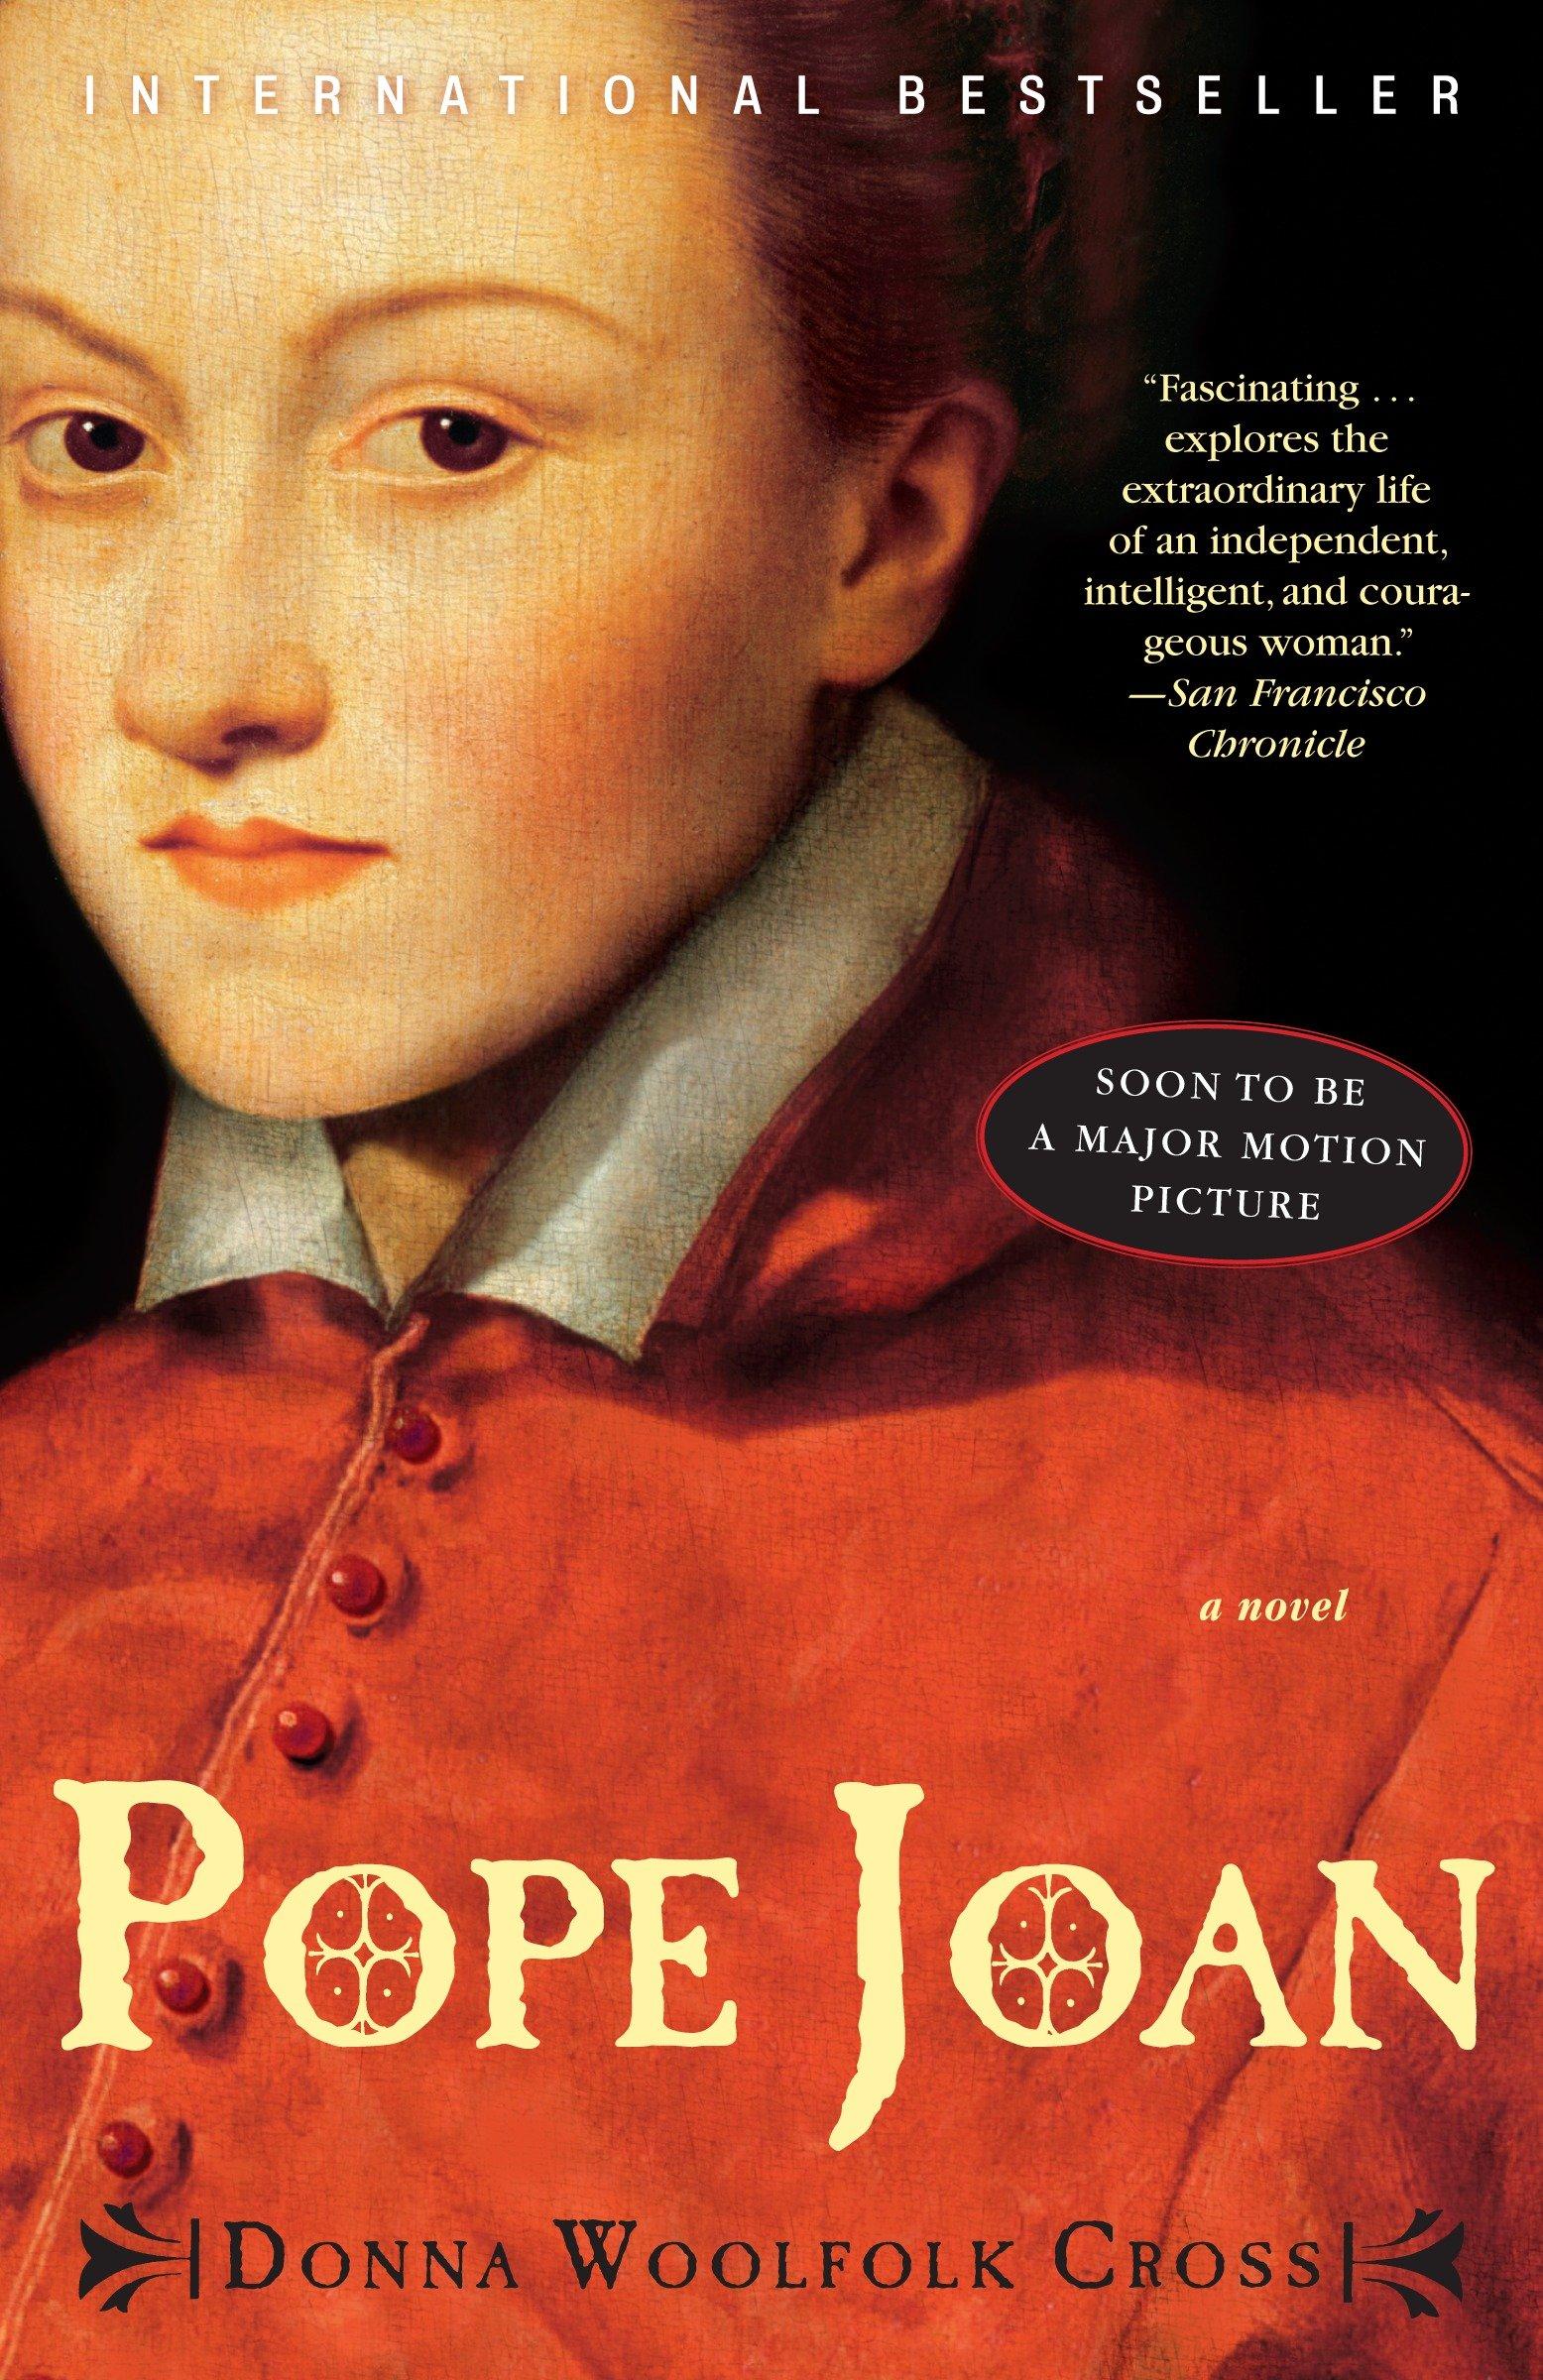 Pope Joan / A Novel / Donna Woolfolk Cross / Taschenbuch / 426 S. / Englisch / 2009 / Random House LLC US / EAN 9780307452368 - Cross, Donna Woolfolk